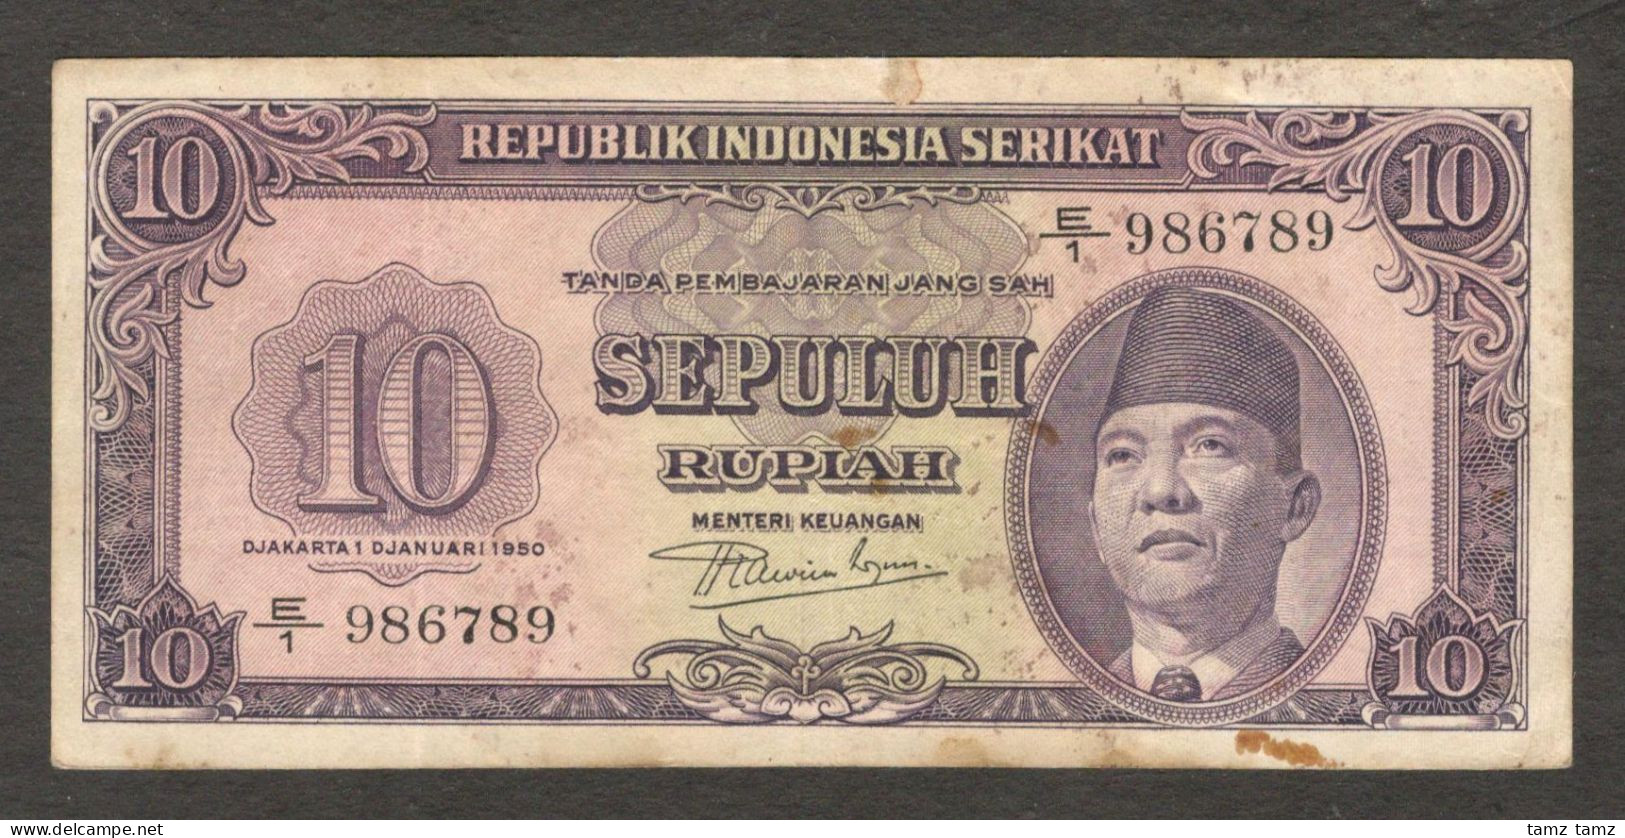 Republik Indonesia Serikat 10 Rupiah President Soekarno P-37 1950 VF - Indonesien